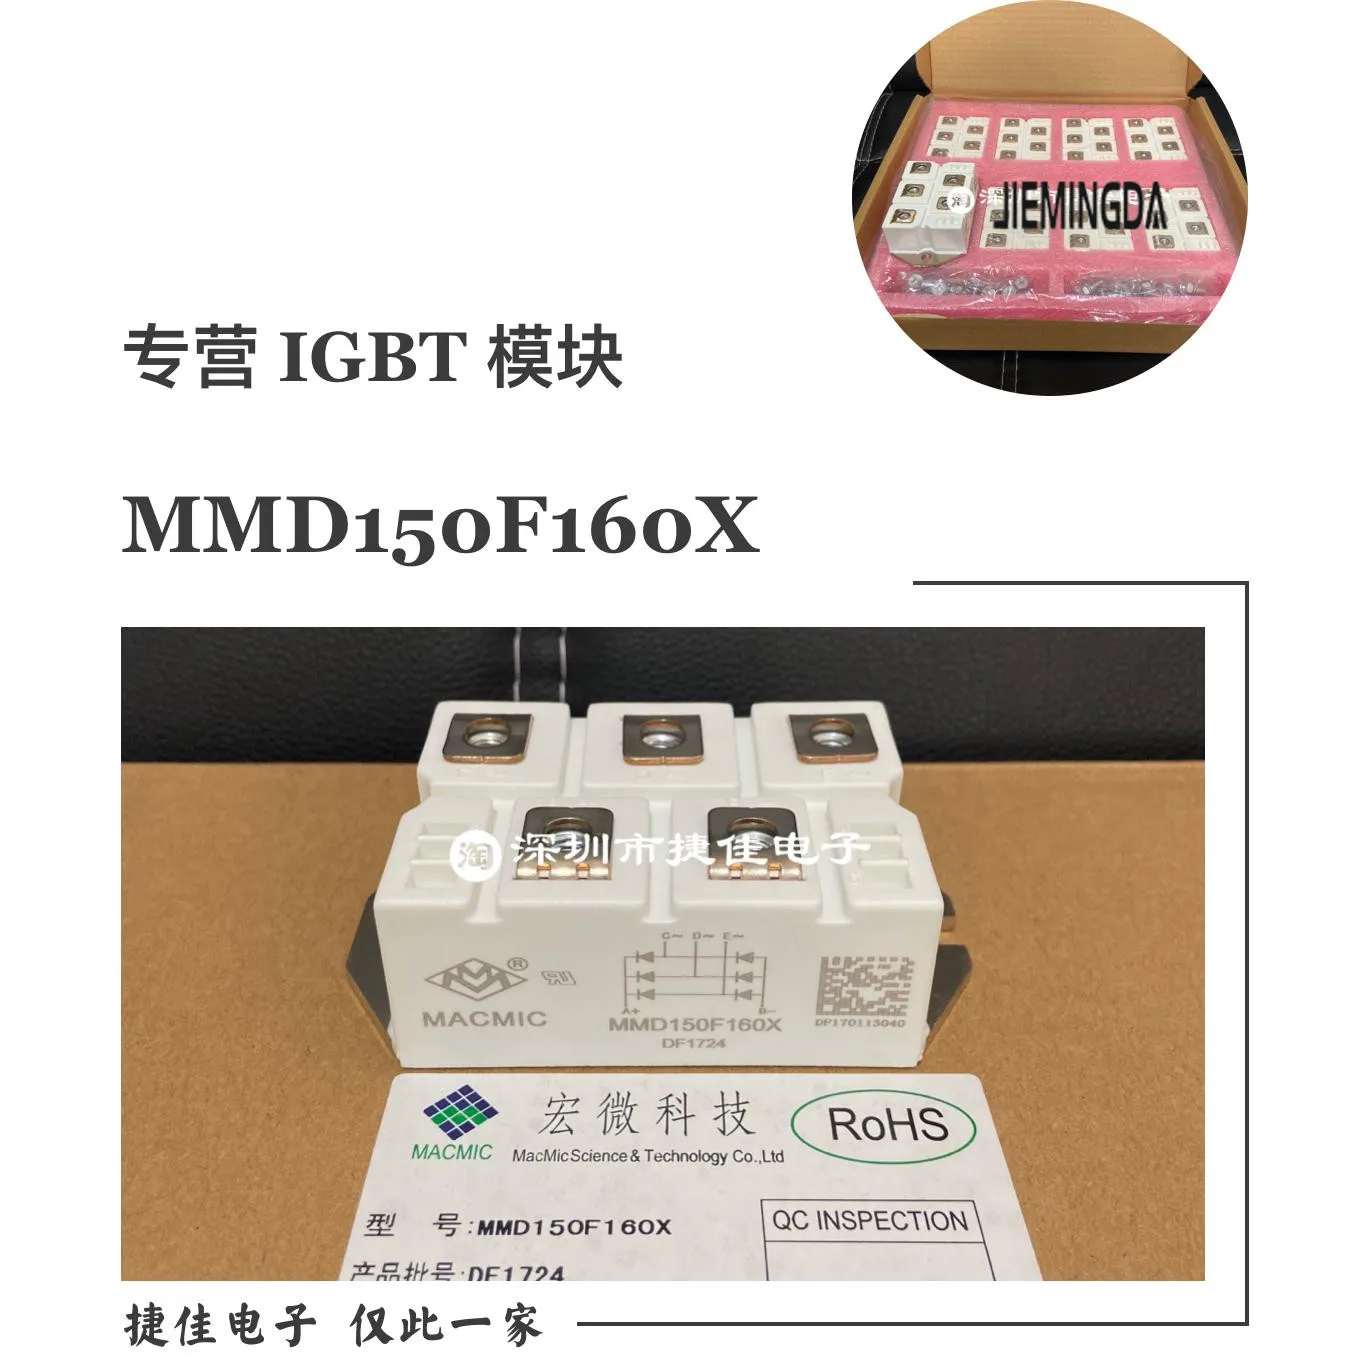 MSD130-16 MSD160-16 MSD100-16 MDS200-16 MMD150F160X 100% nauji ir originalūs - 0